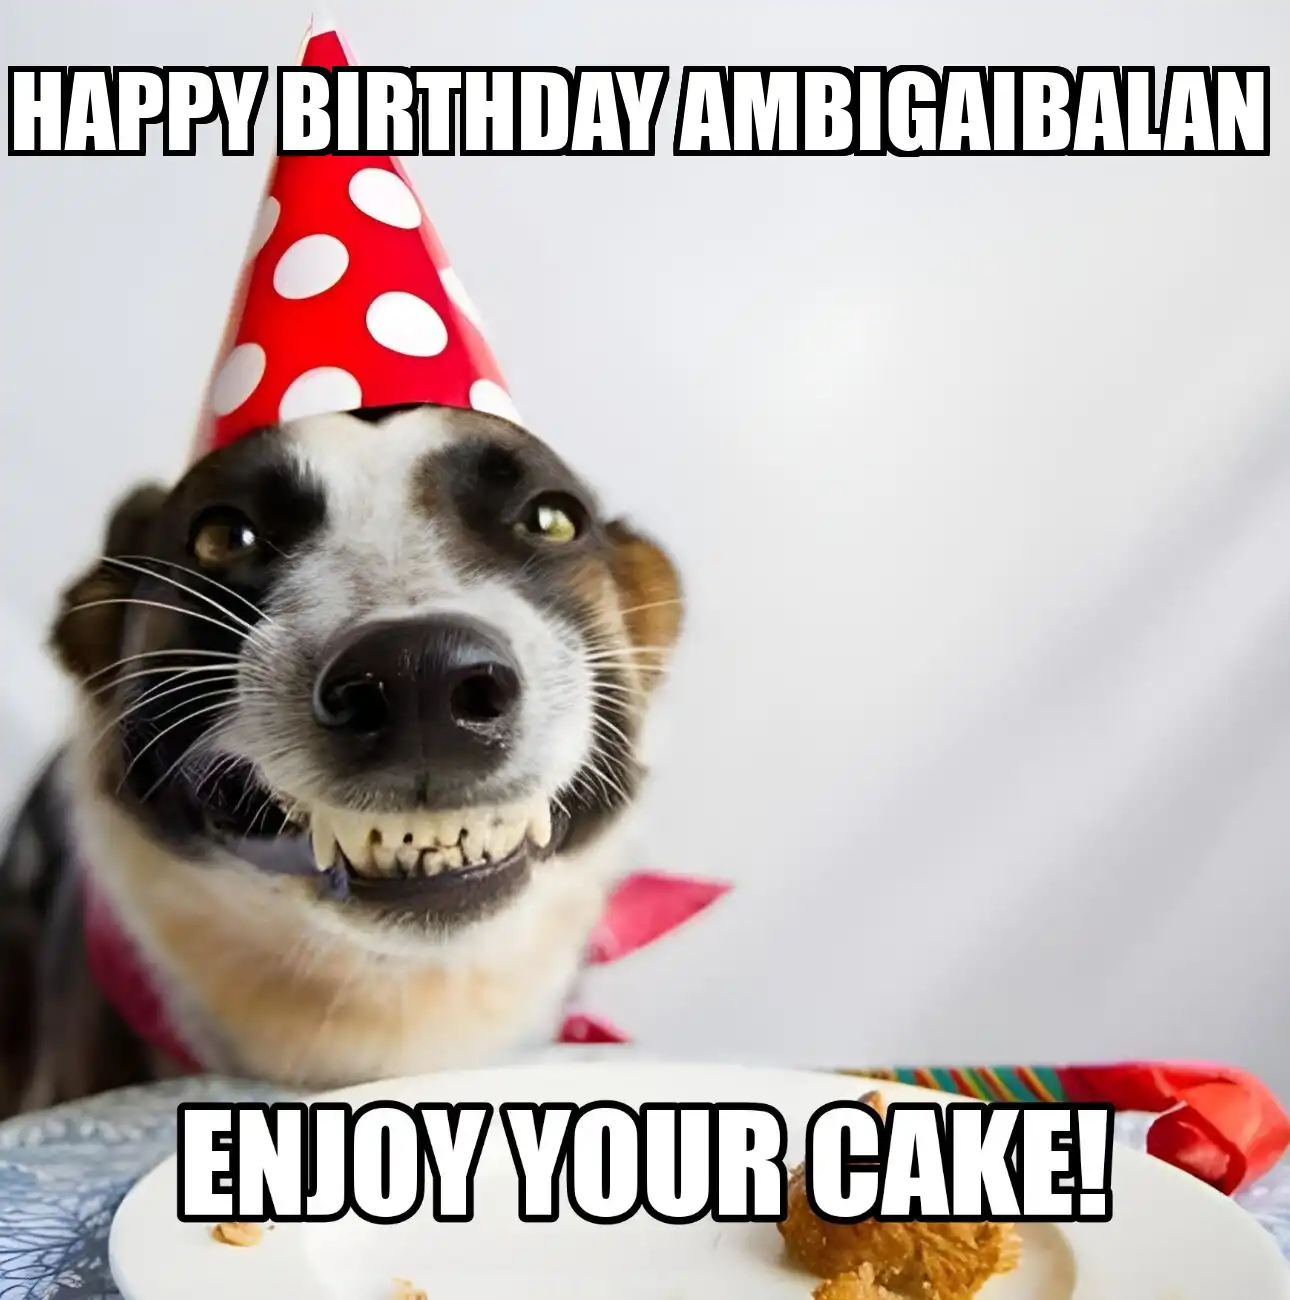 Happy Birthday Ambigaibalan Enjoy Your Cake Dog Meme